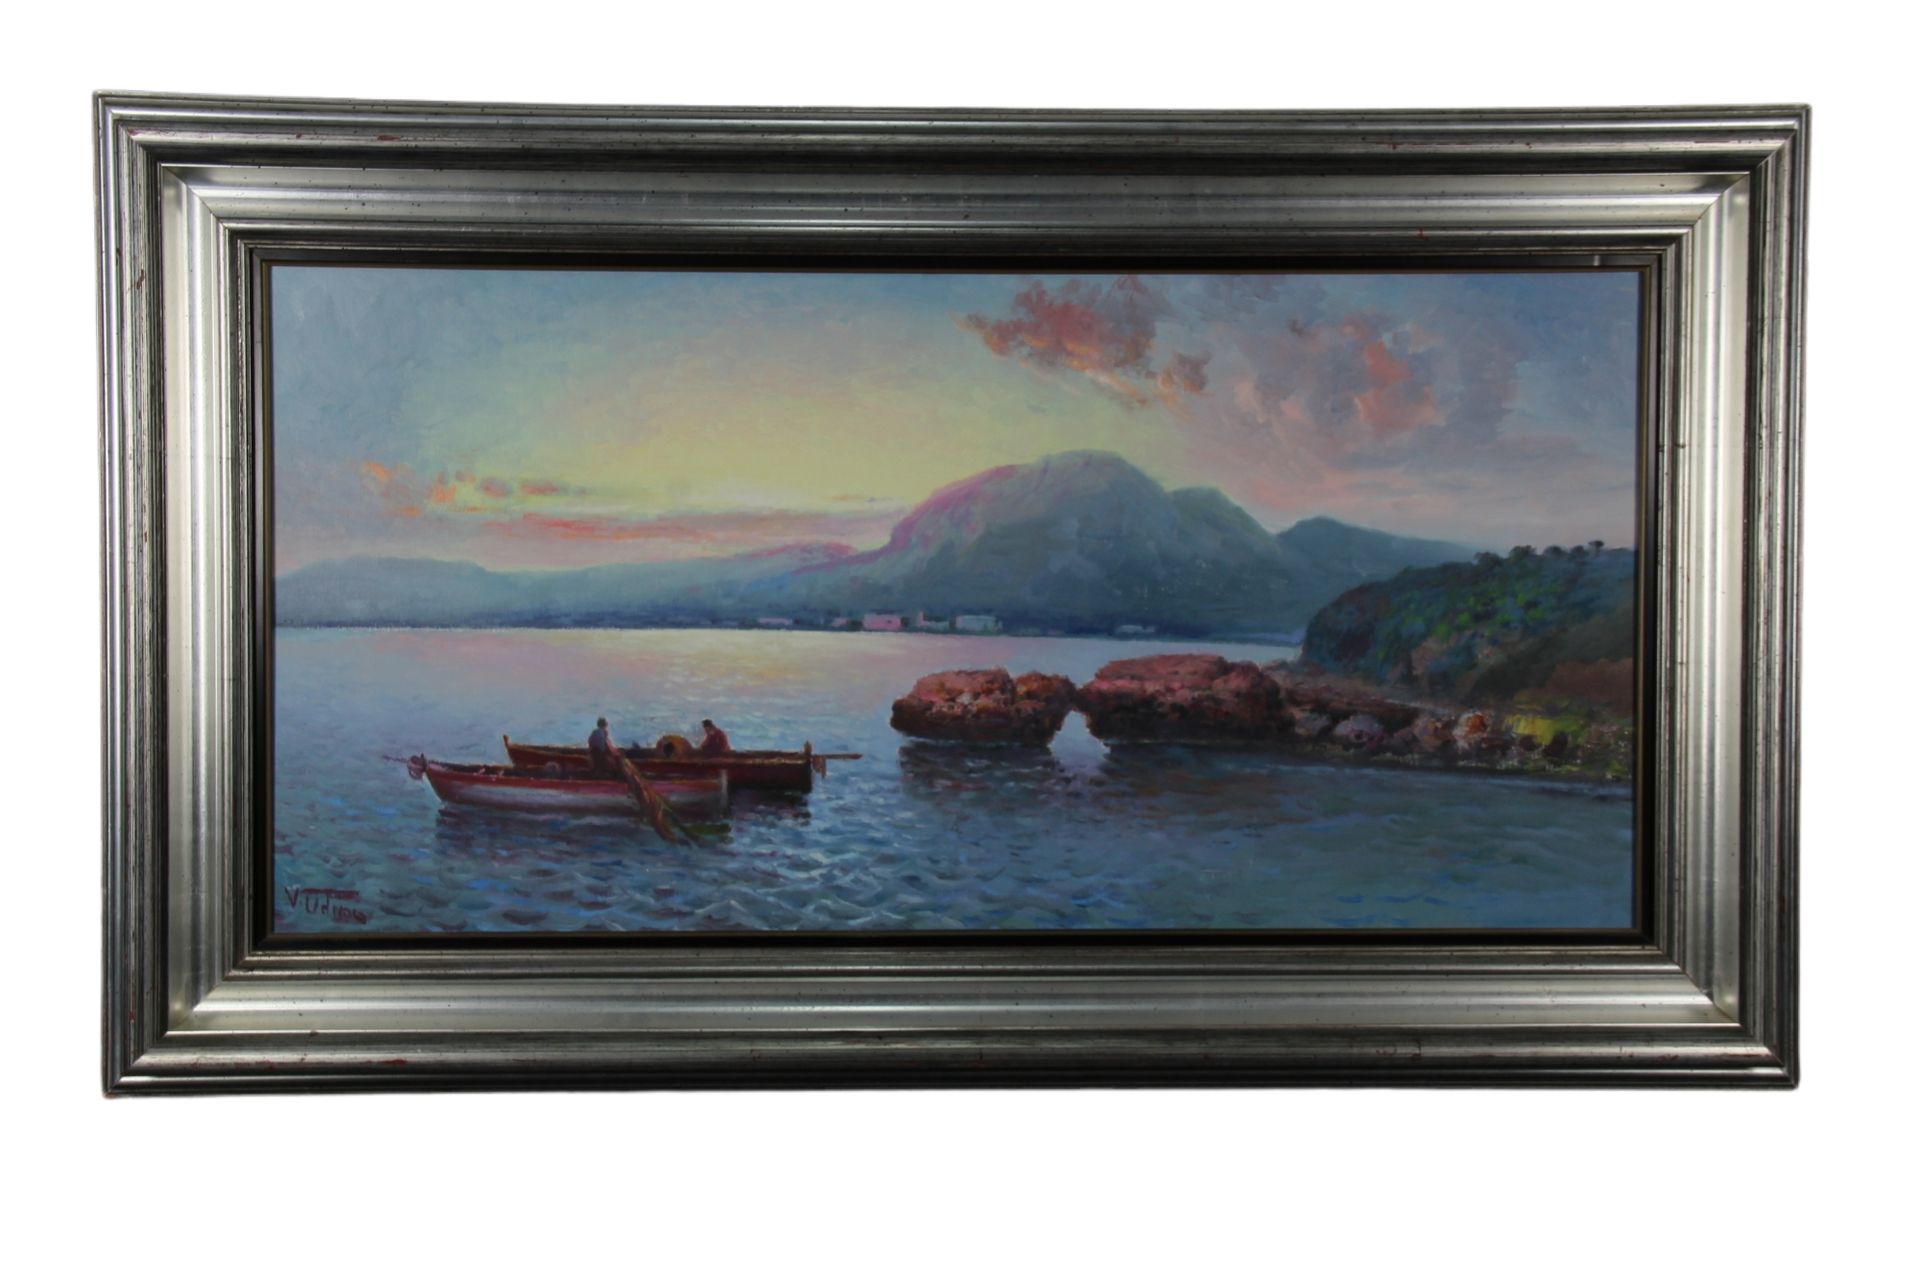 DIPINTO OLIO SU TELA Raff Marina con barche e pescatori al tramonto , cornice in&hellip;